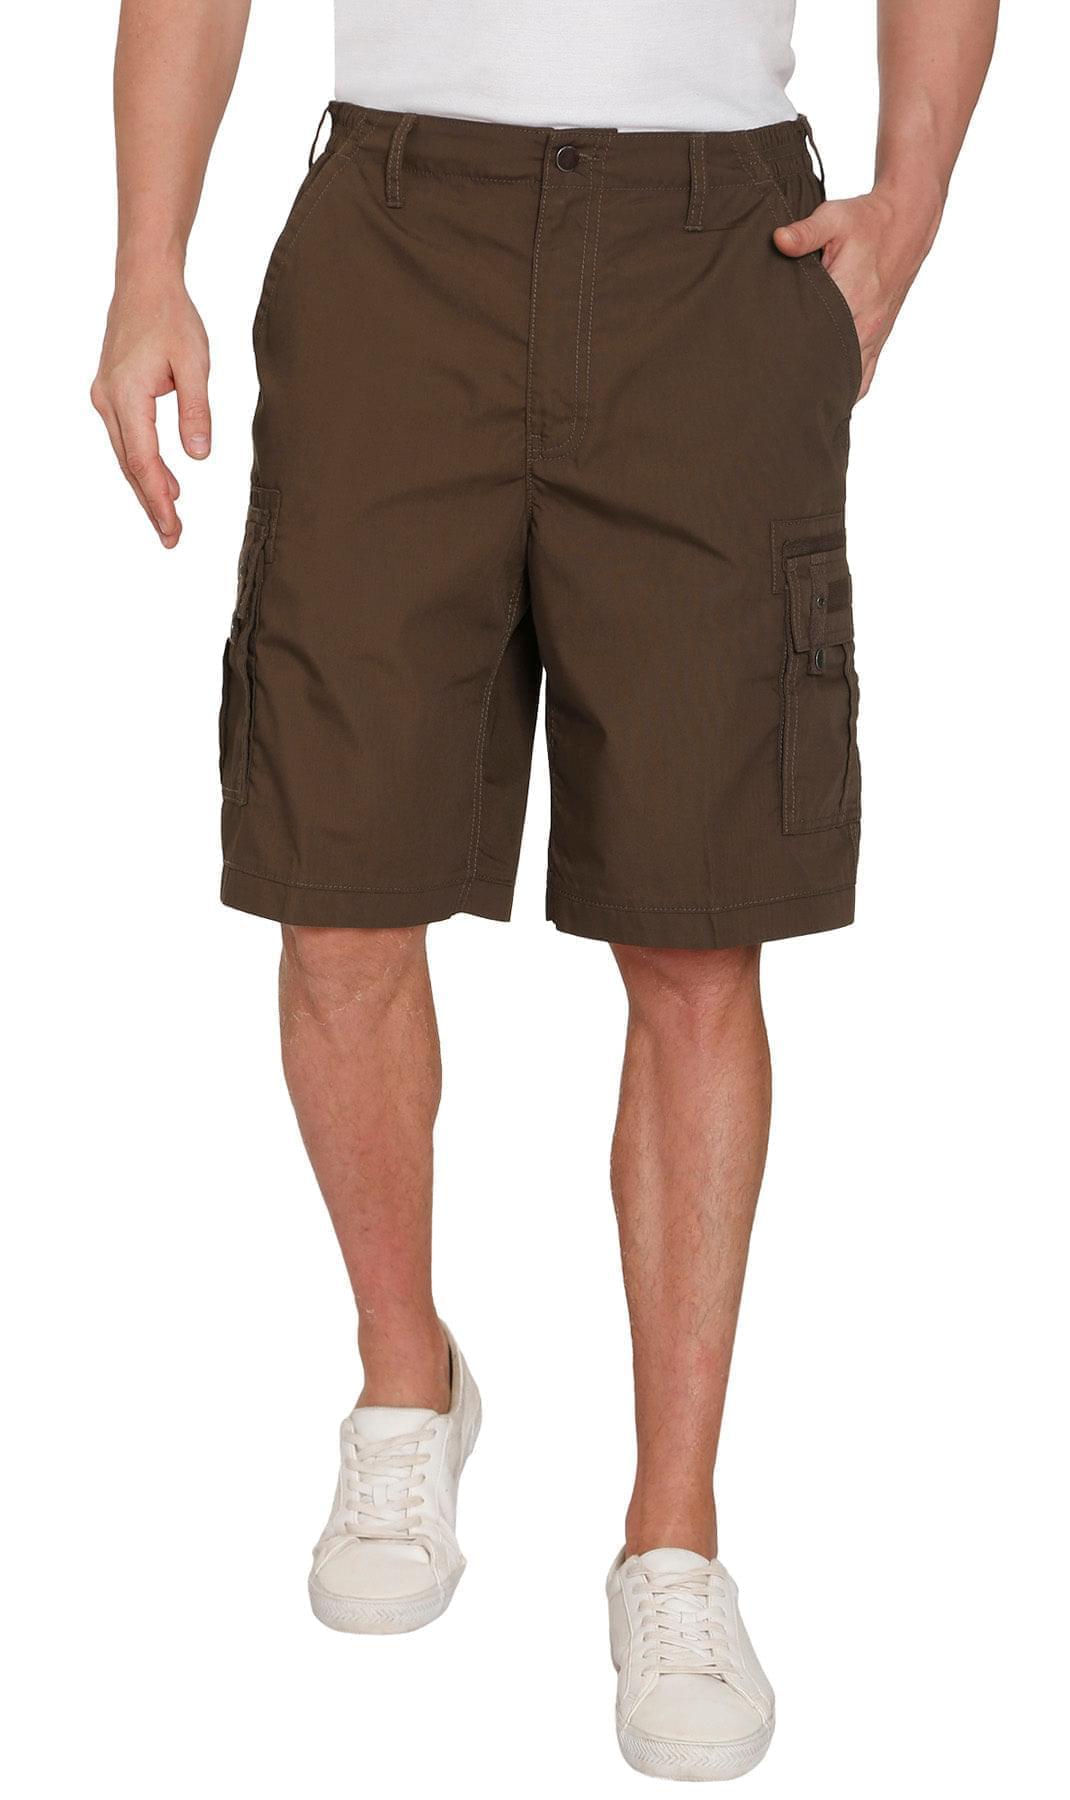 Turtle Bay New York Men's Fleece Cargo Pants - Comfy Sweatpants